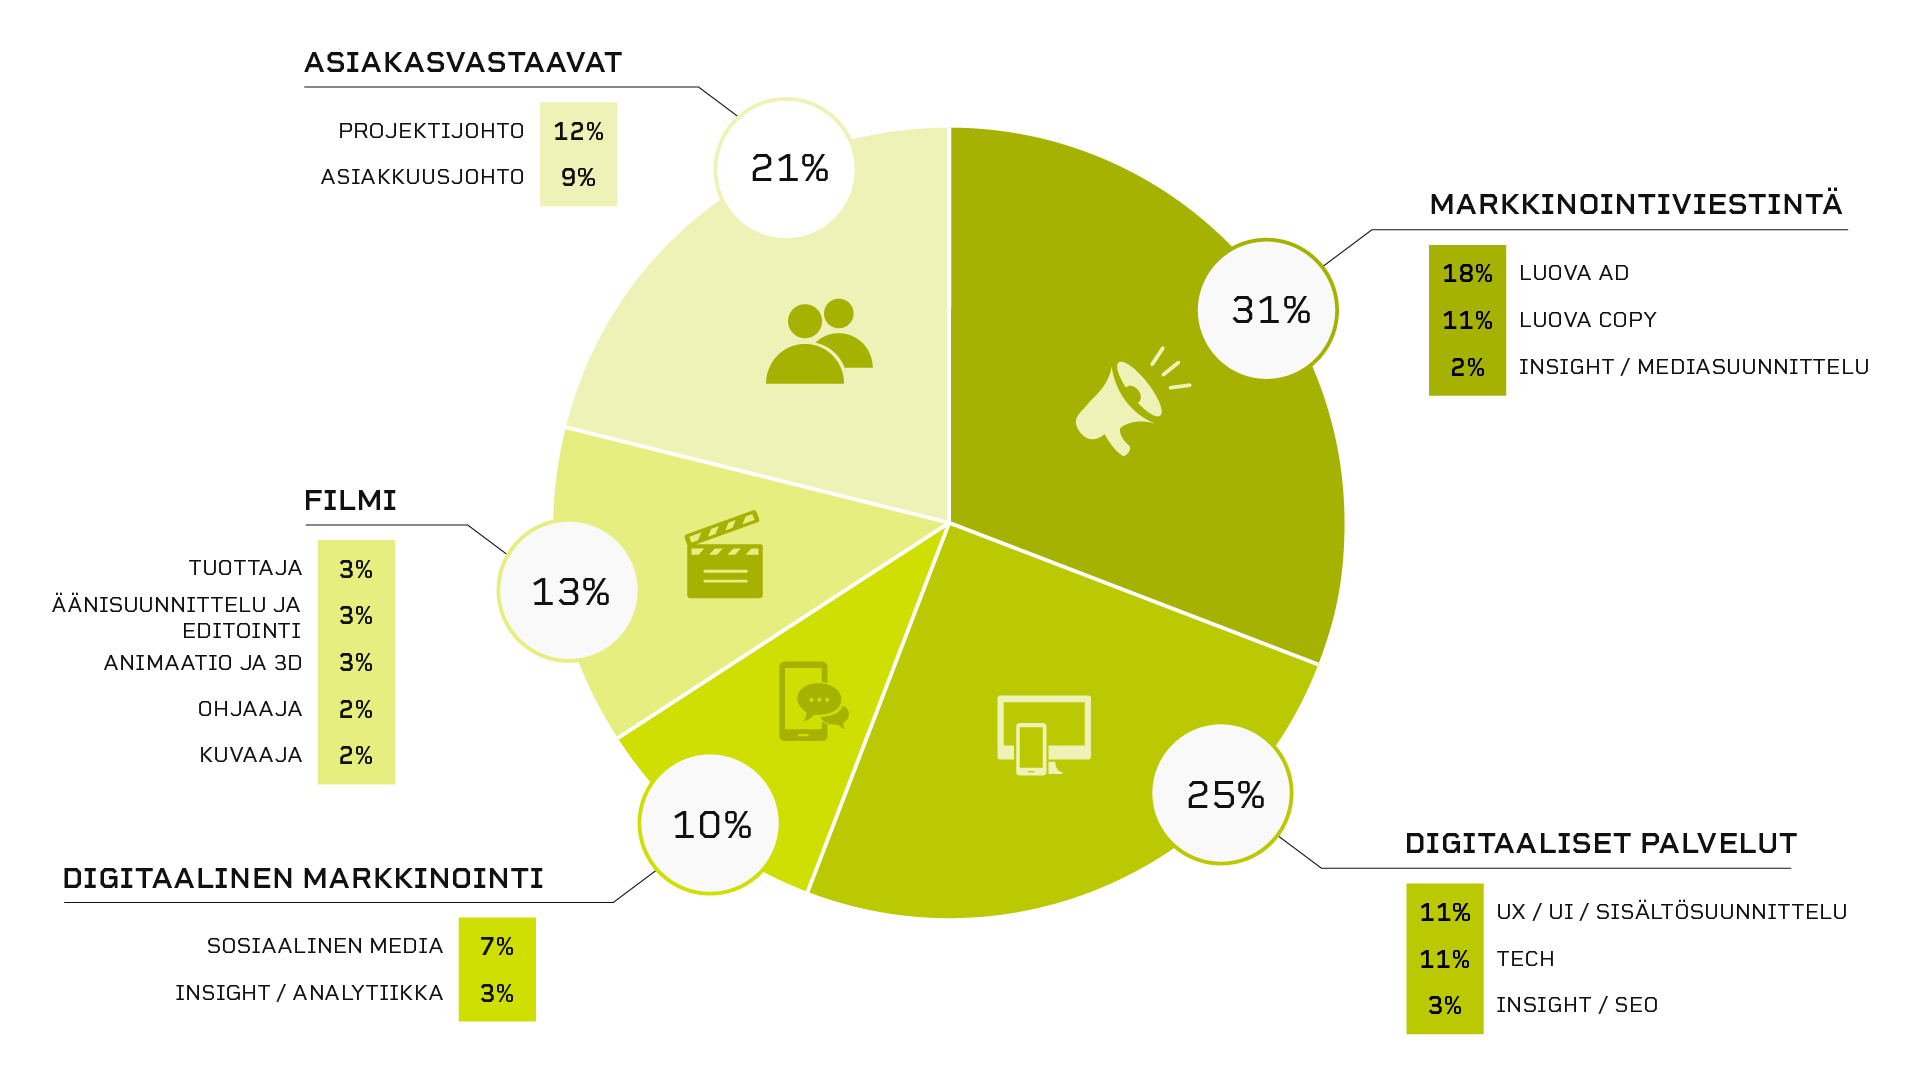 Kaavio Nitrolaisten jakautumisesta eri osaamisalueille. Asiakasvastaavat 21%, Markkinoiontiviestintä 31%, Digitaaliset palvelut 25%, Digitaalinen markkinointi 10% ja Nitro Film 13% henkilökunnasta.